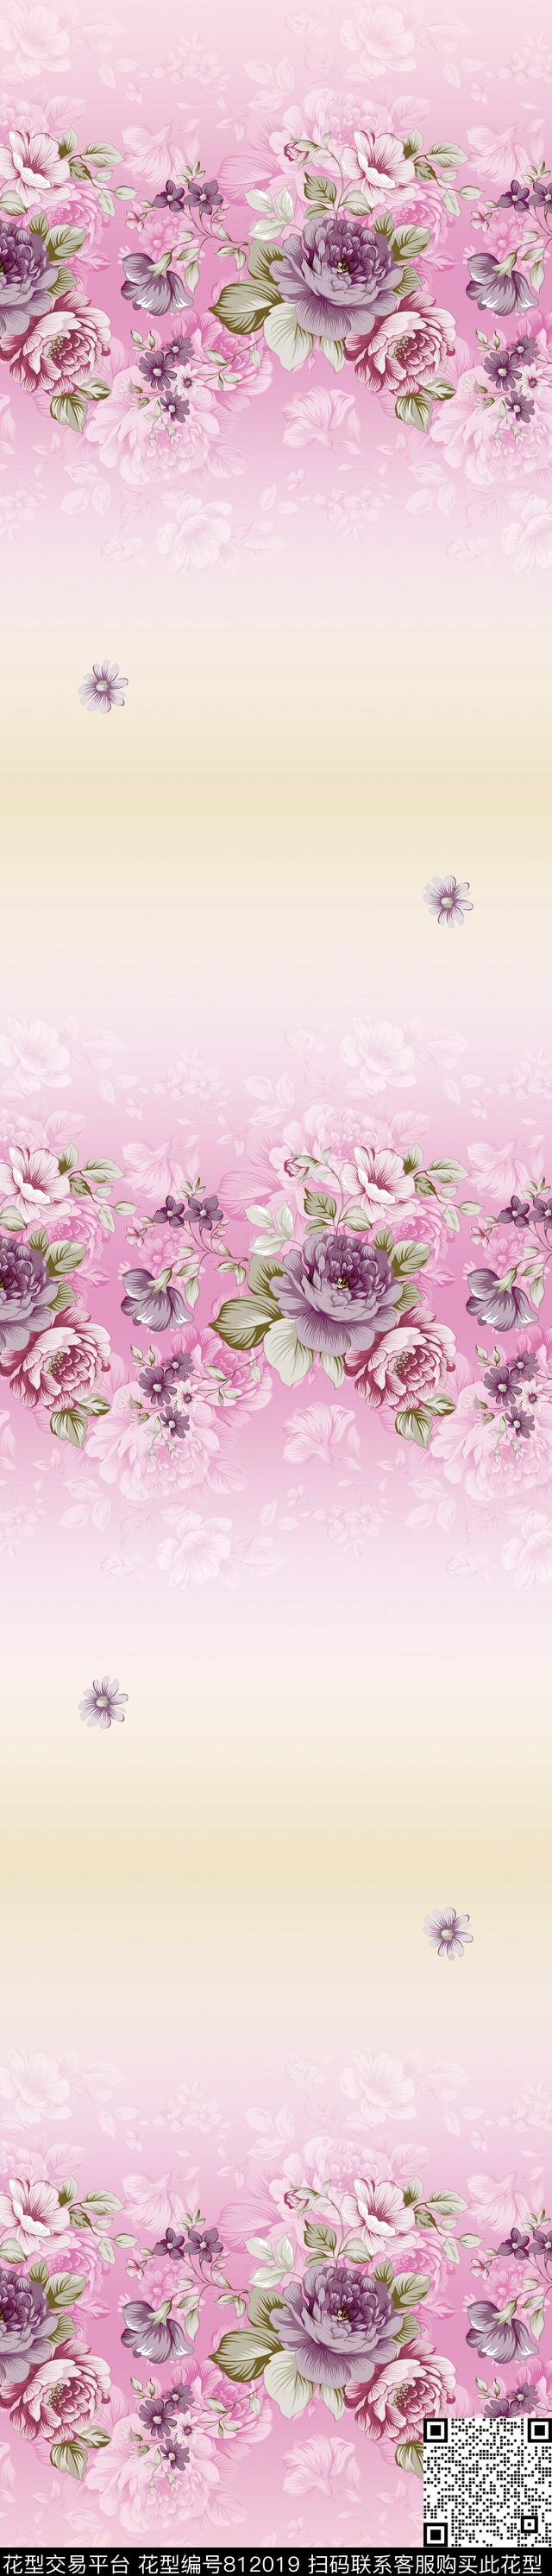 YJH170323b.jpg - 812019 - 花朵 窗帘 花卉 - 传统印花花型 － 窗帘花型设计 － 瓦栏